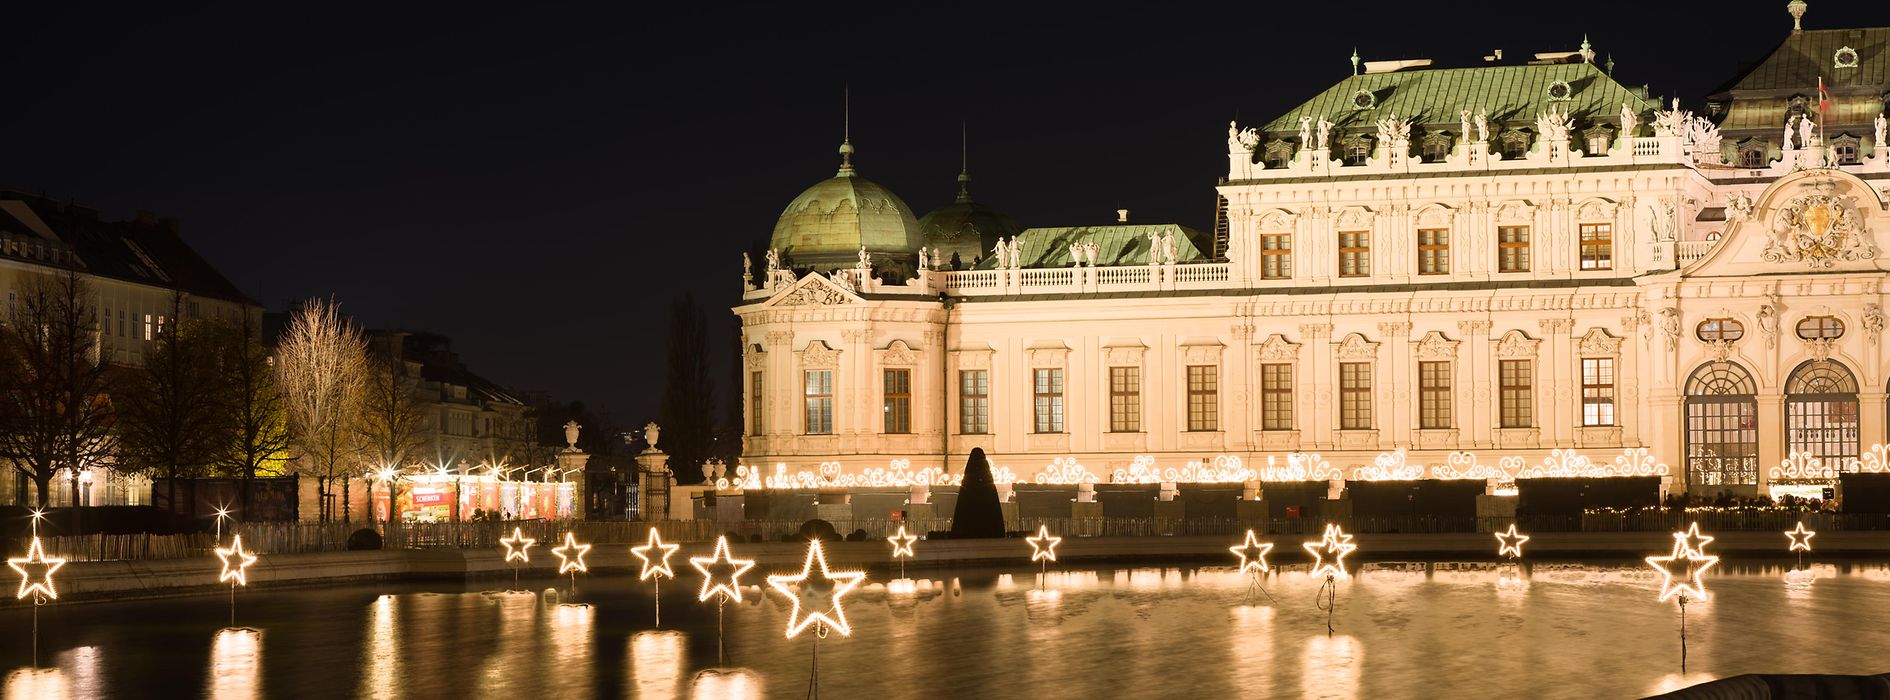 I Palazzi del Belvedere con illuminazione natalizia